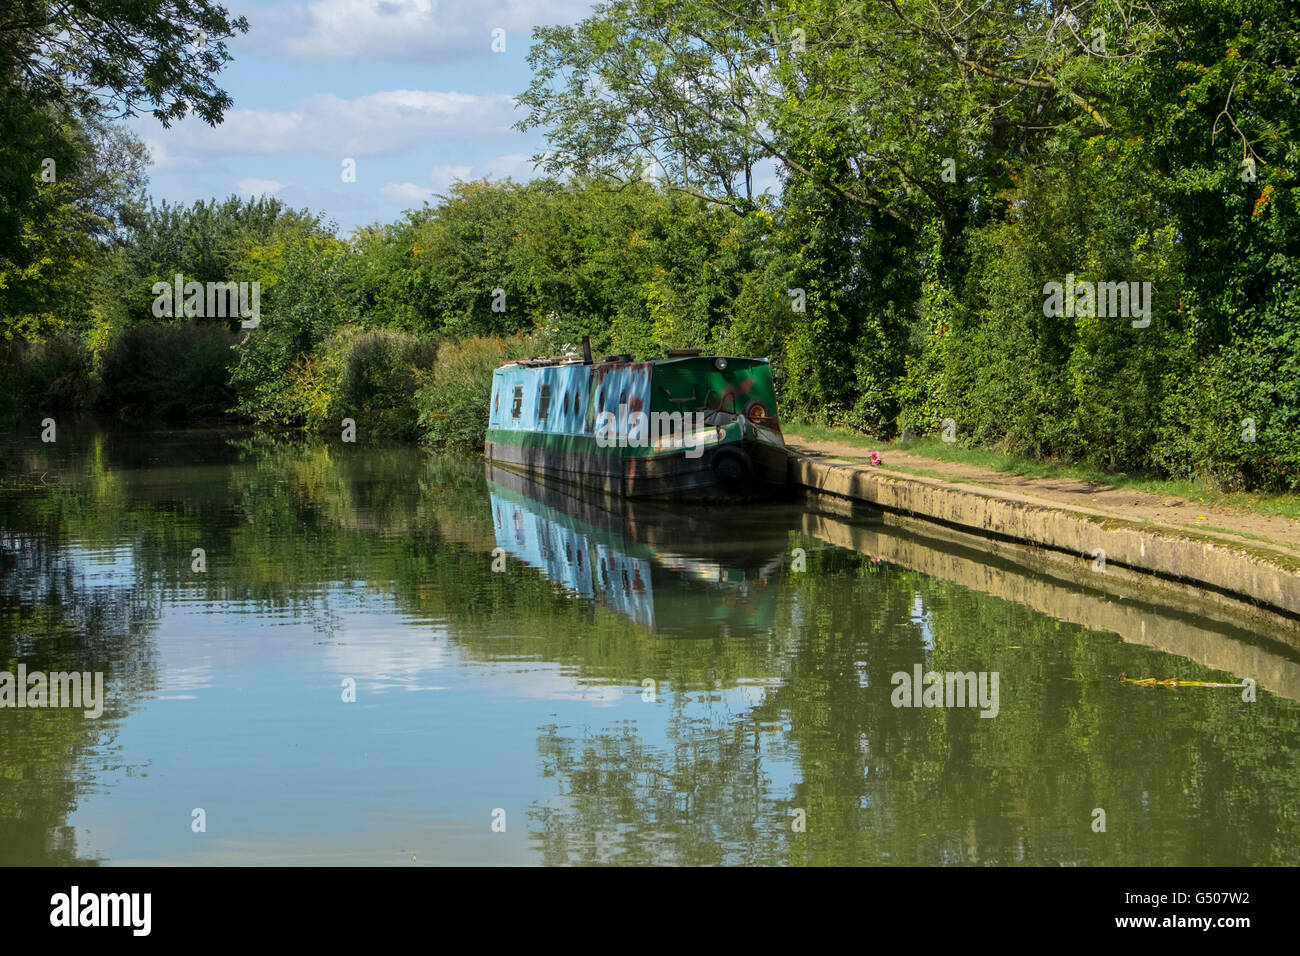 Grachtenboot auf Grand Union Canal in ländlichen Leicestershire. Stockfoto